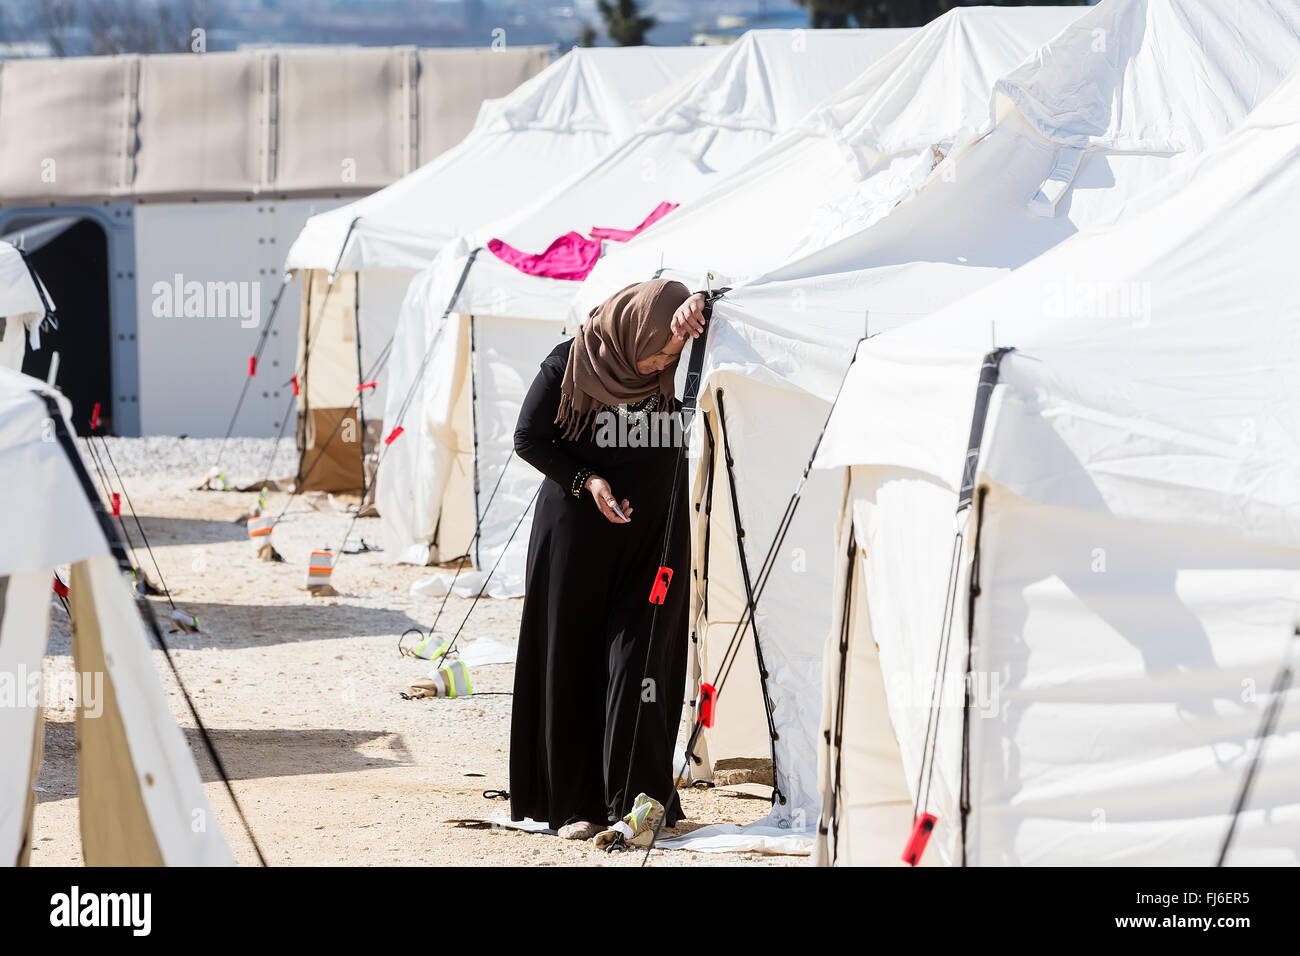 Thessalonique, Grèce - 25 Février 2016 : Des réfugiés vivant dans des tentes dans le centre en attente de réinstallation Diavata à poursuivre leurs Banque D'Images